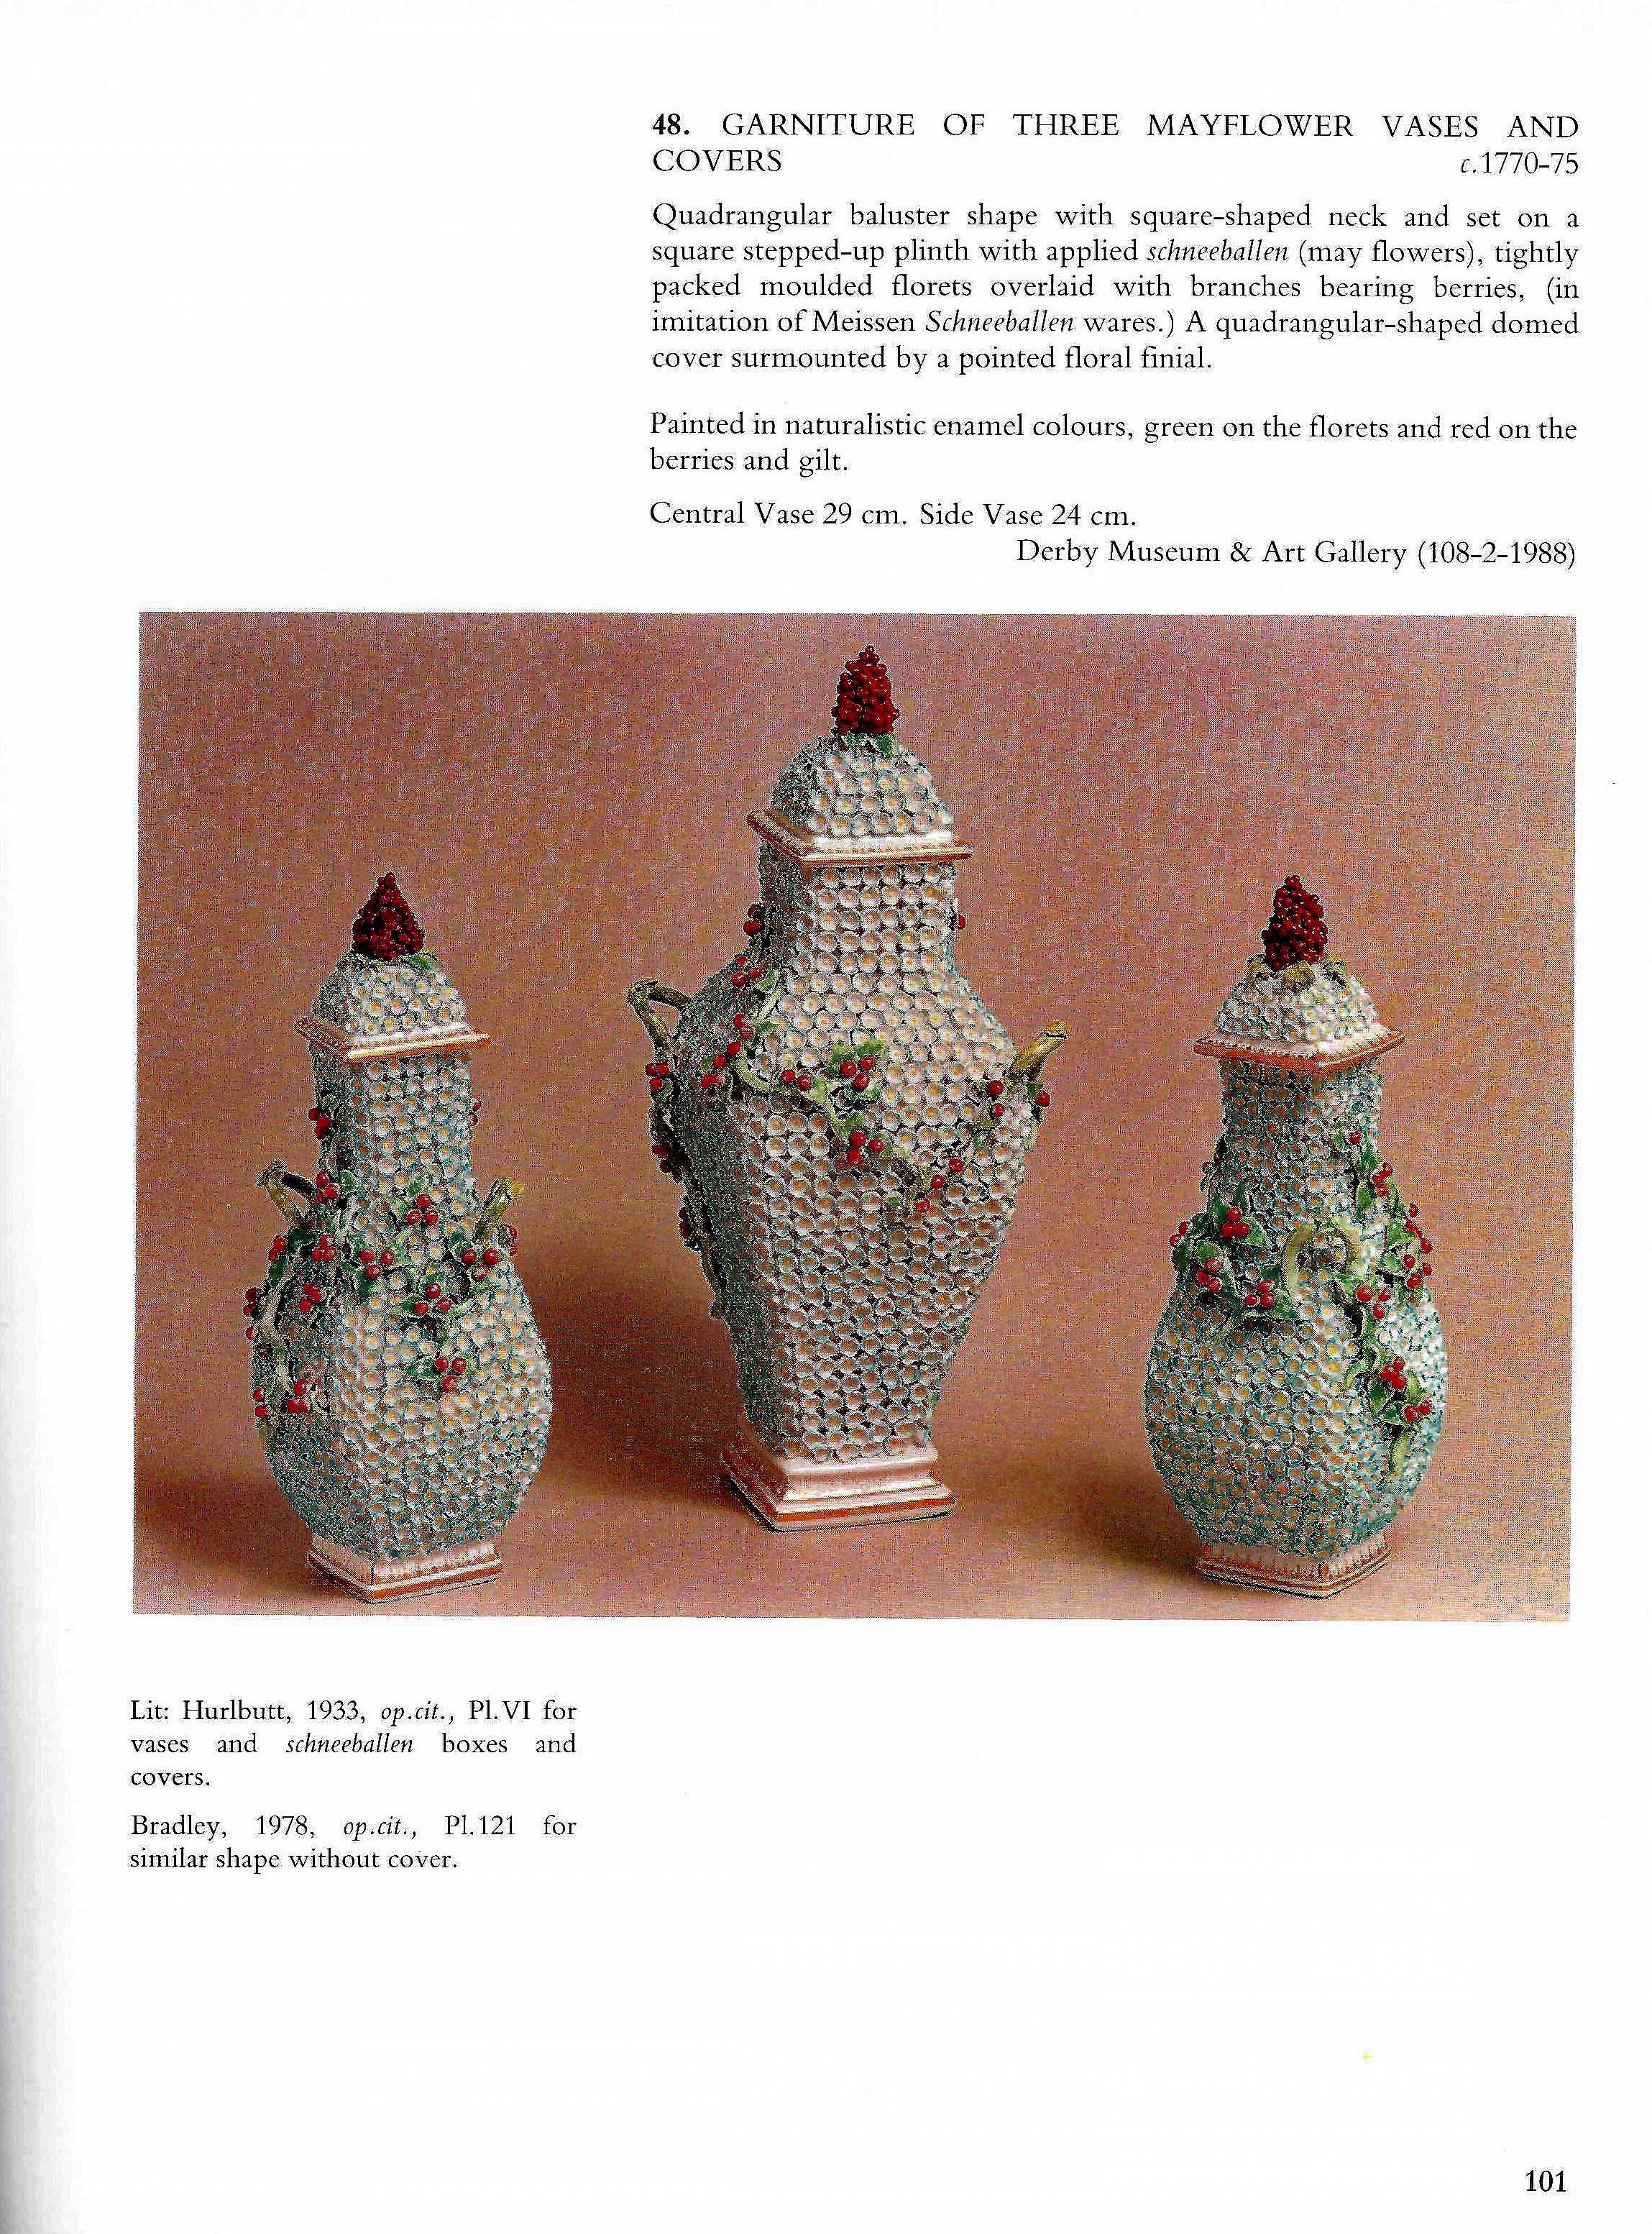 Derby Porzellan Vase mit Maiblütendekoration, 
ca. 1770-1775
(Ref: VM0041)

Die vierseitig geformte Balustervase und der Deckel mit quadratischem Hals und Fuß sind mit einem Muster aus mehreren dicht gepackten Maiblüten oder Maiblumen